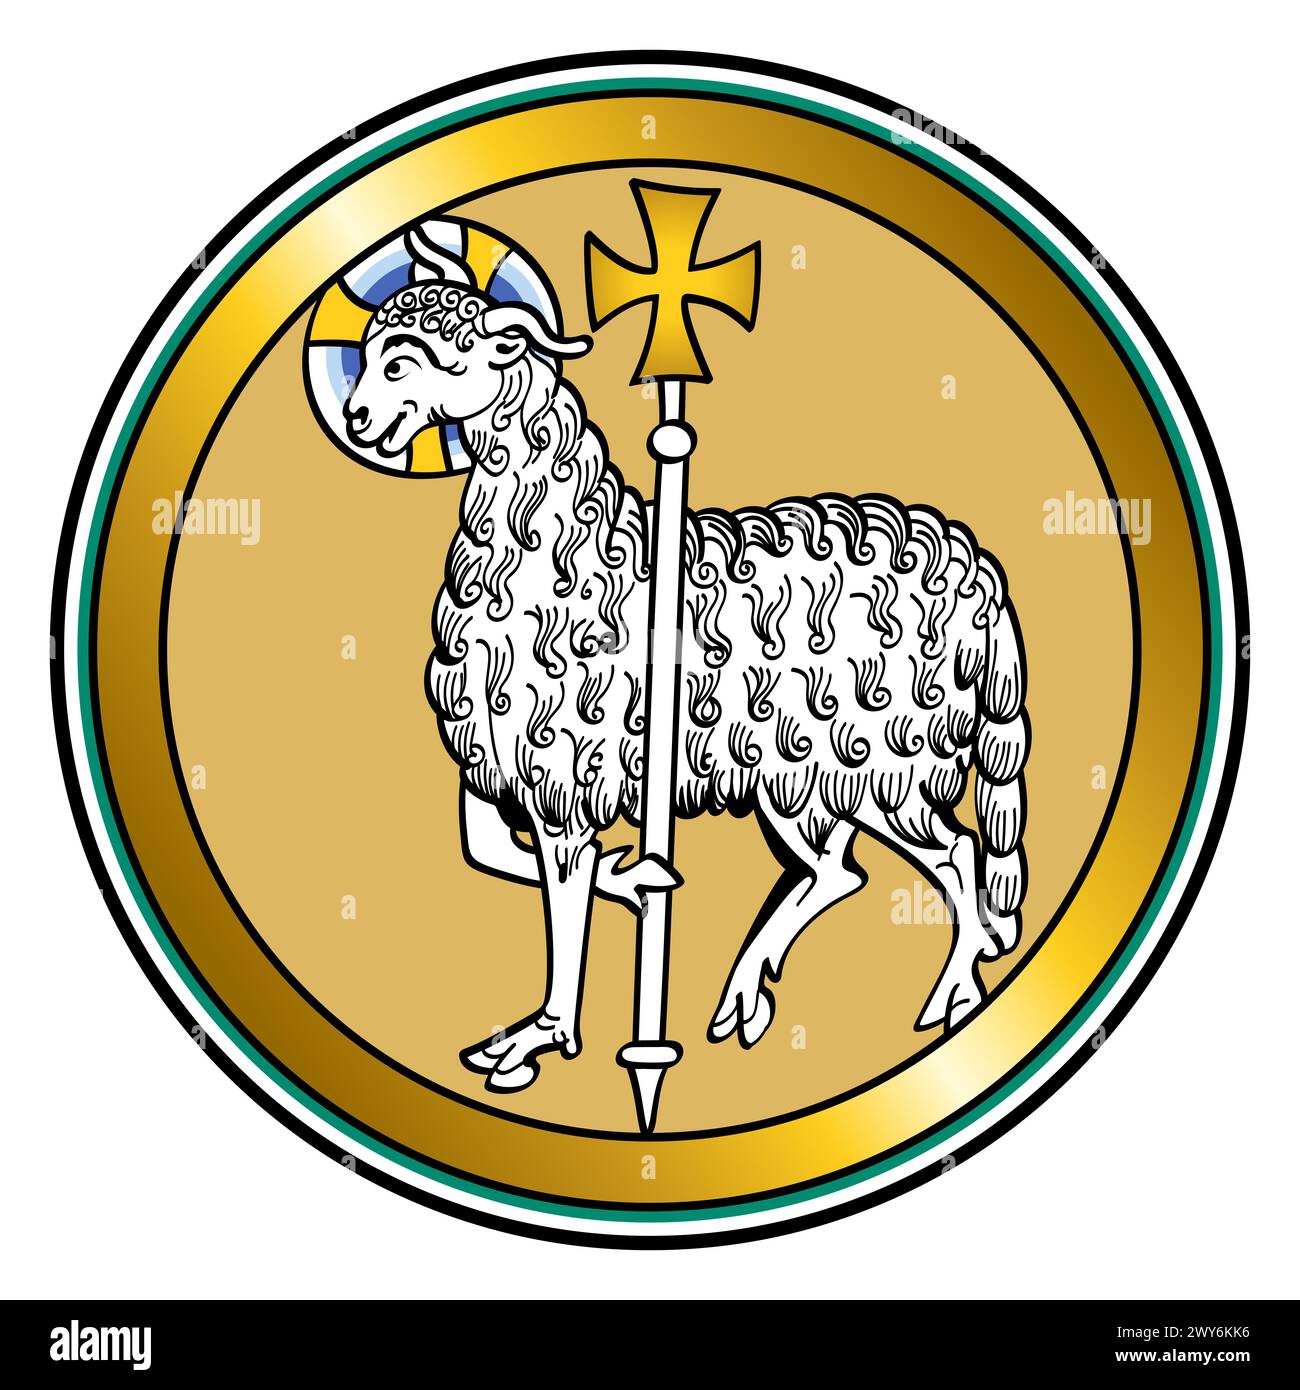 Agnus Dei, Lamm Gottes, mittelalterliche Darstellung von Jesus als Lamm, mit einem Halo und einem Standard mit einem Kreuz, das den Sieg symbolisiert. Stockfoto